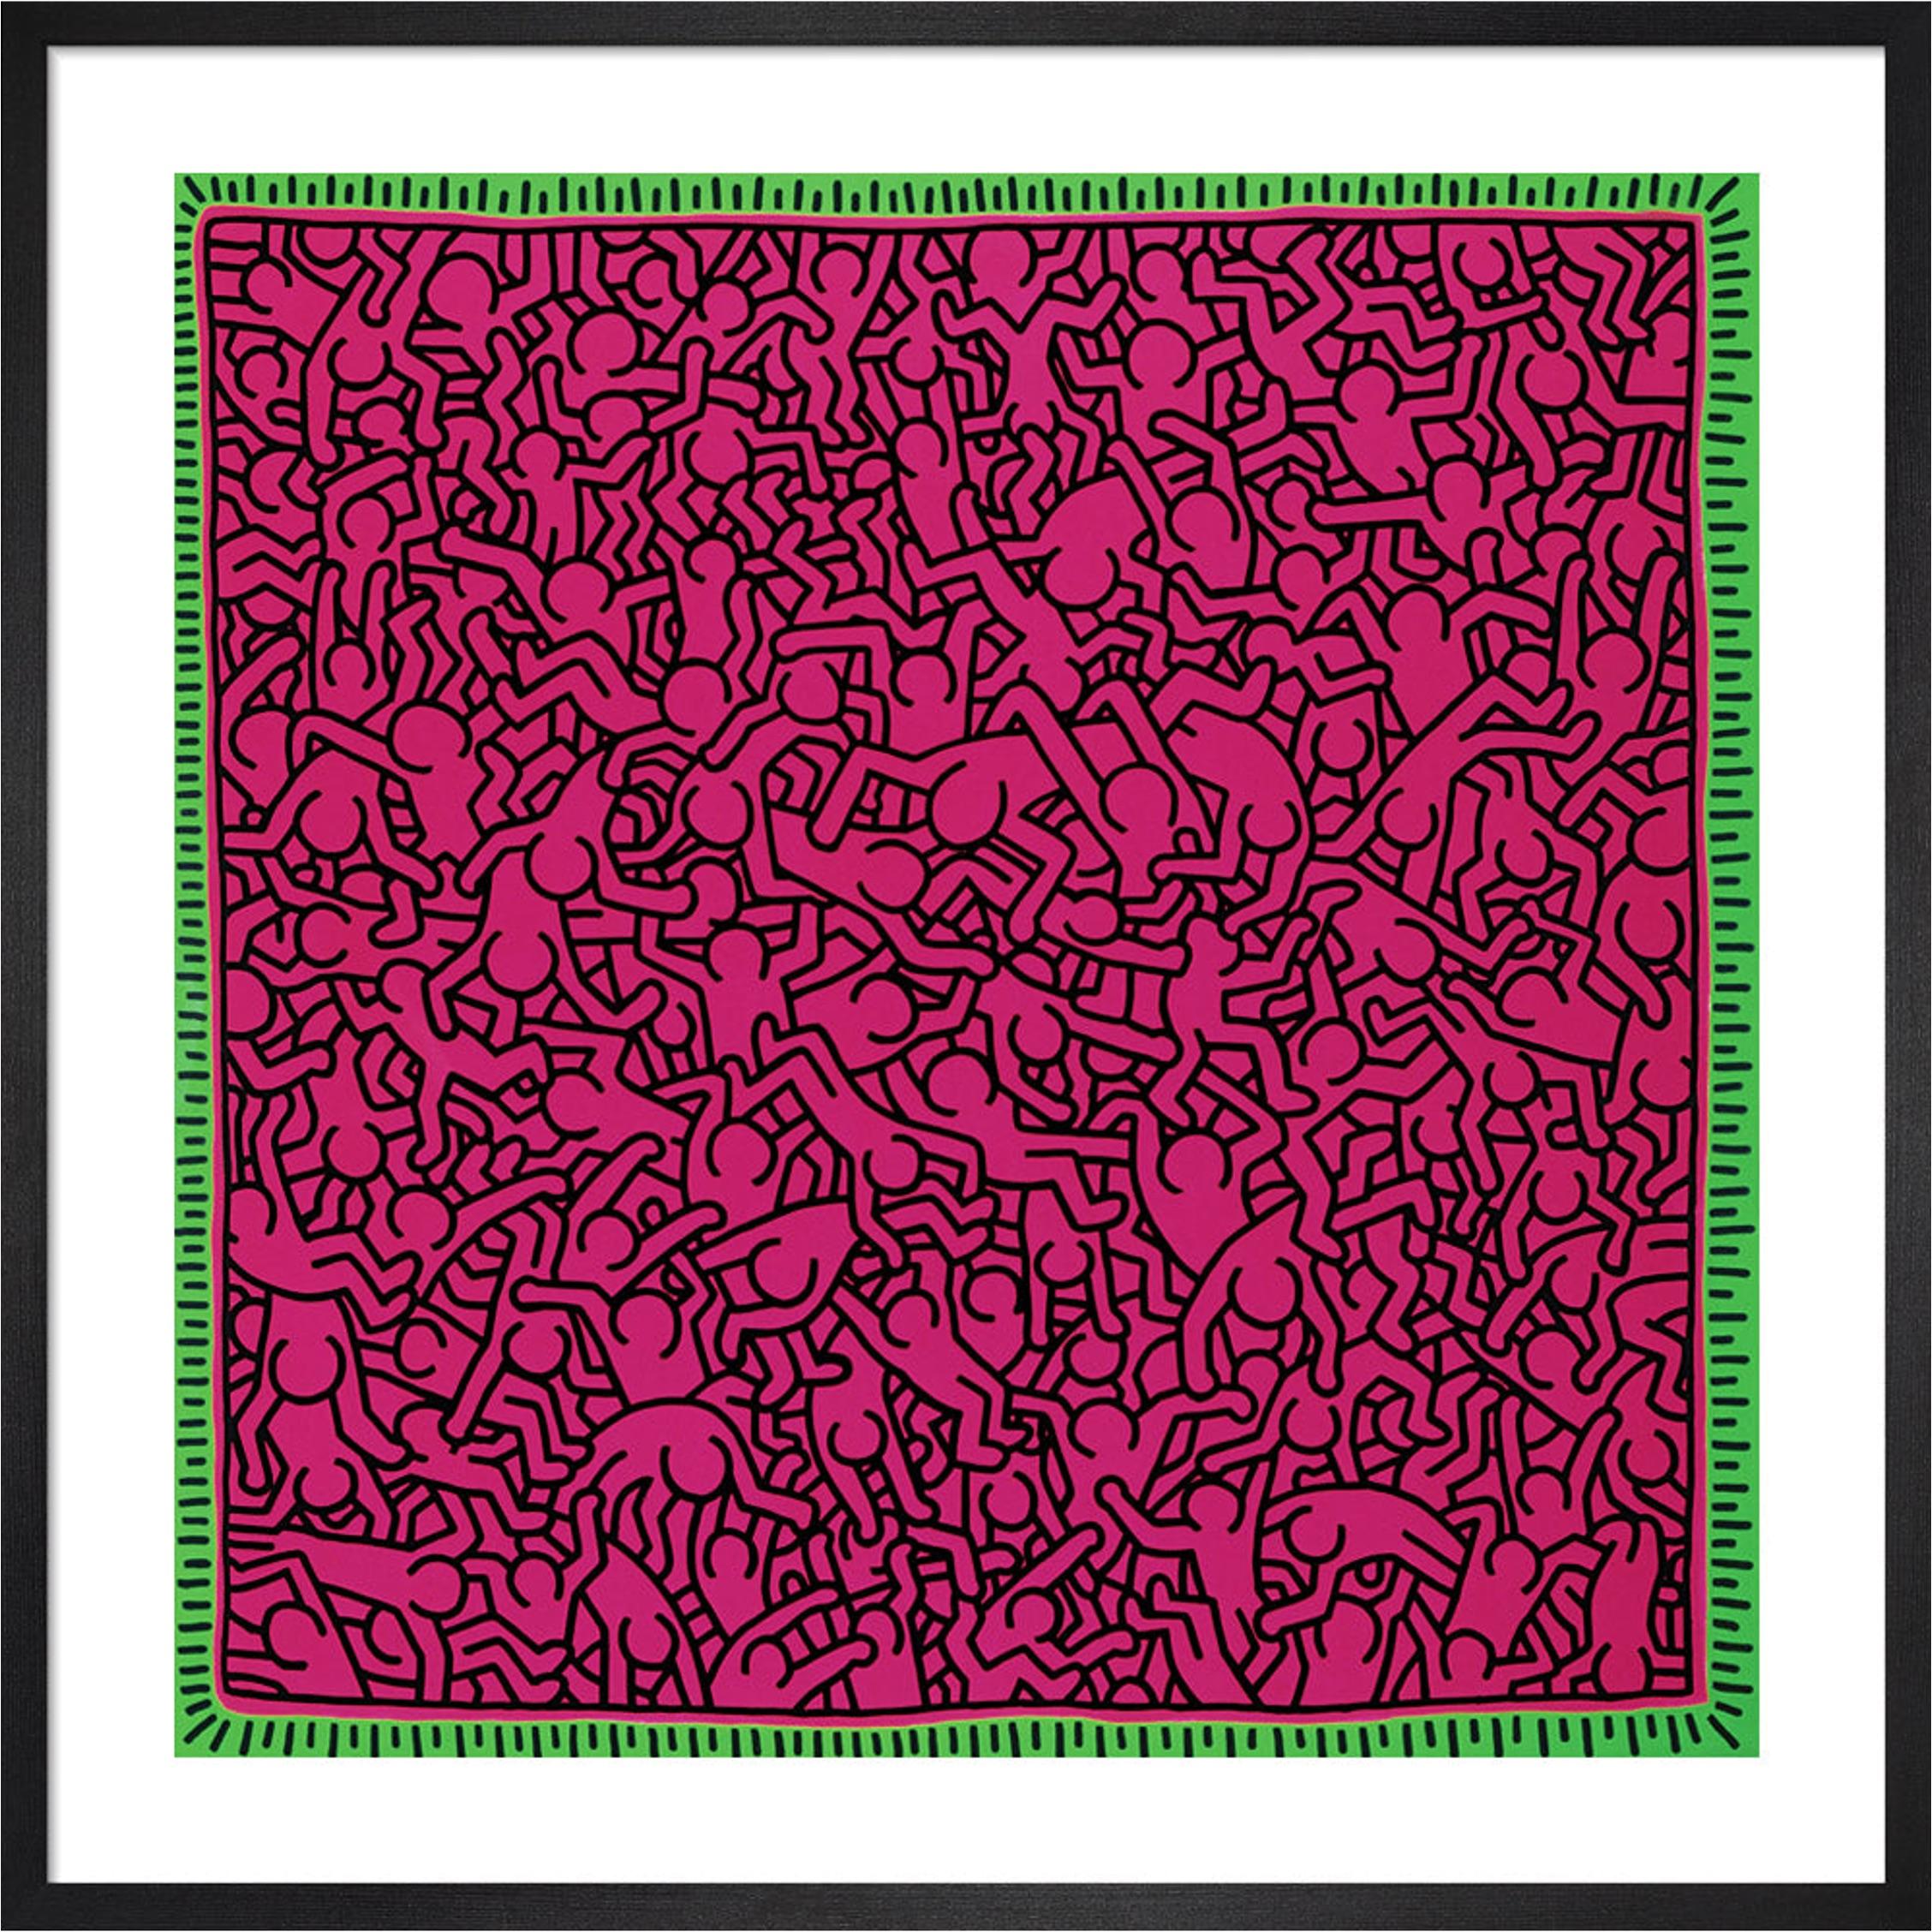 Gerahmter Druck von Keith Haring – Ohne Titel